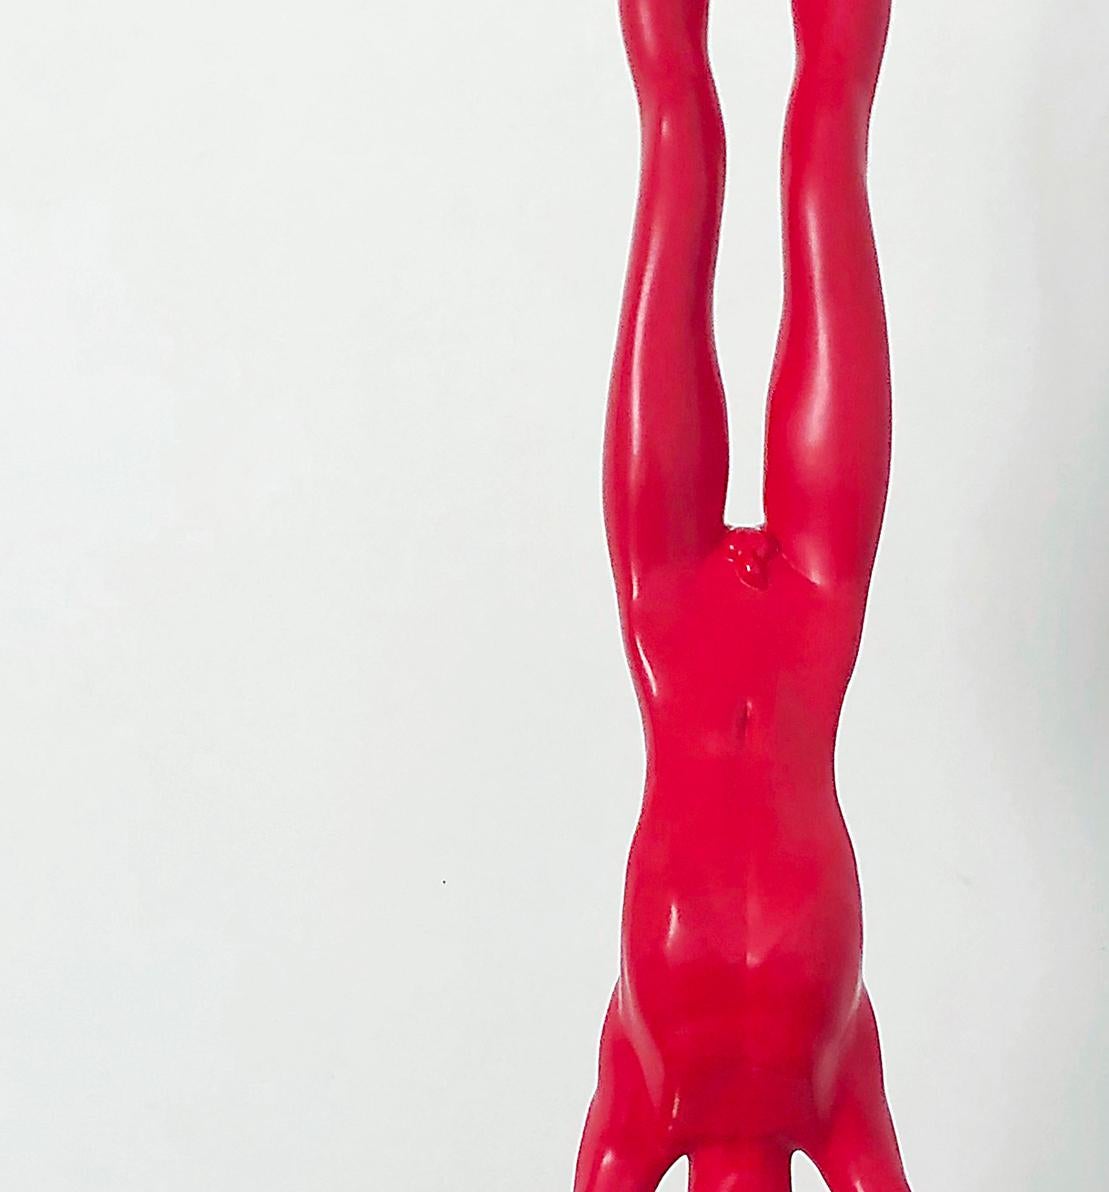 Zeitgenössische surreale Skulptur des neuen Realisten Chen Wenling-Handstands  (Grau), Figurative Sculpture, von Chen Wenling 